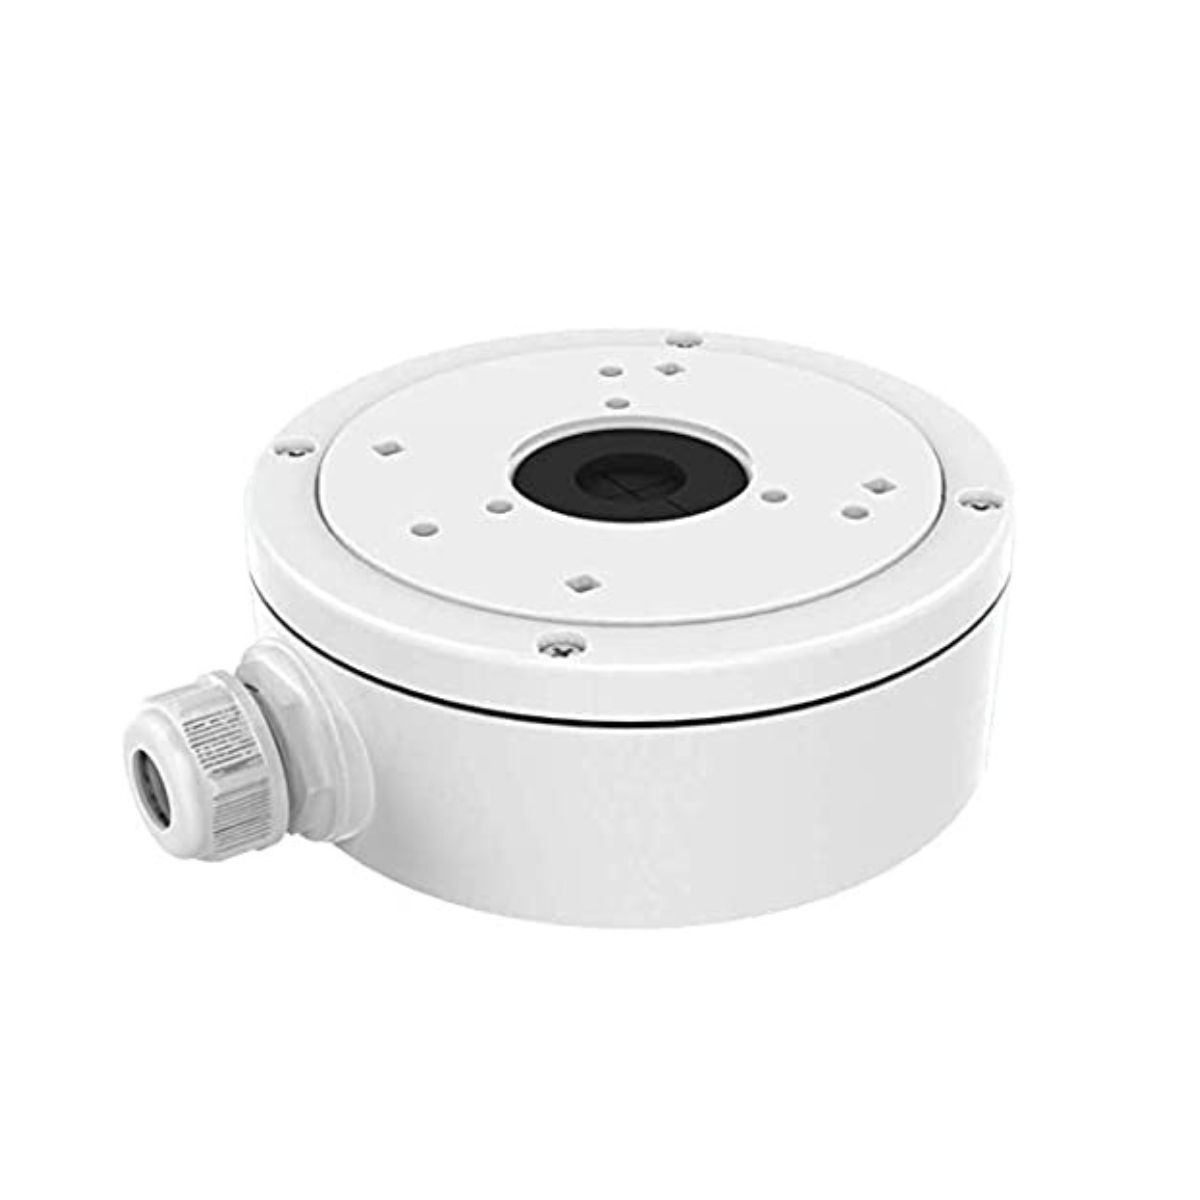 Hộp nối Camera Dome Hikvision DS-1280ZJ-S chất liệu hợp kim nhôm, màu trắng